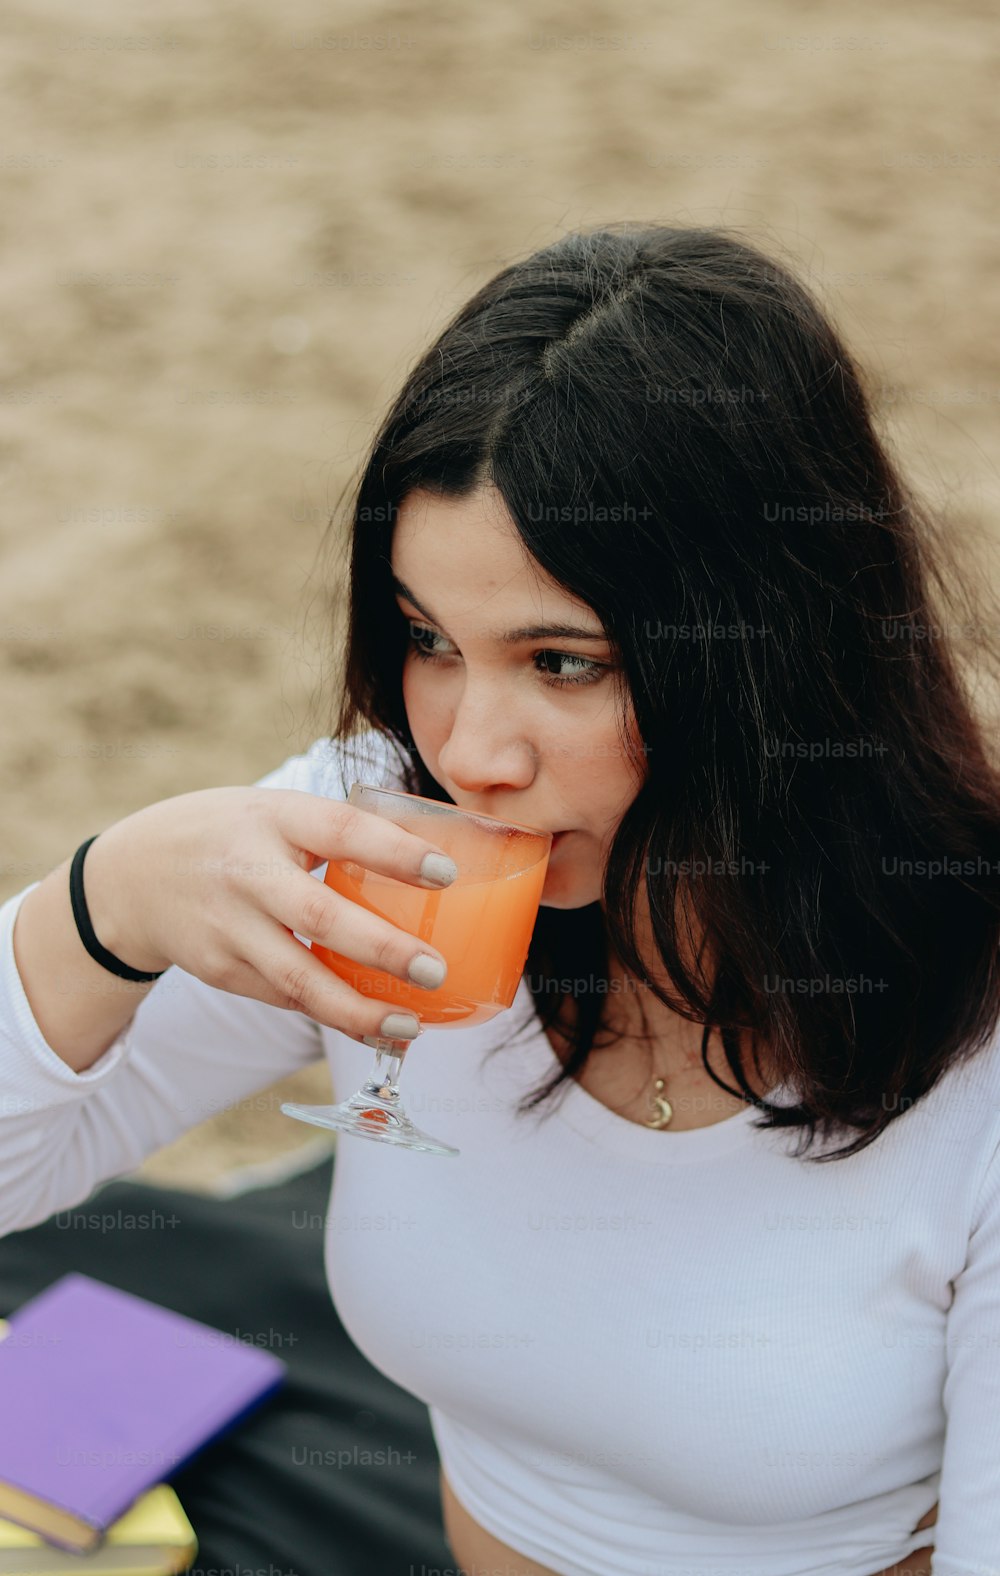 Una mujer con una camisa blanca bebiendo una bebida